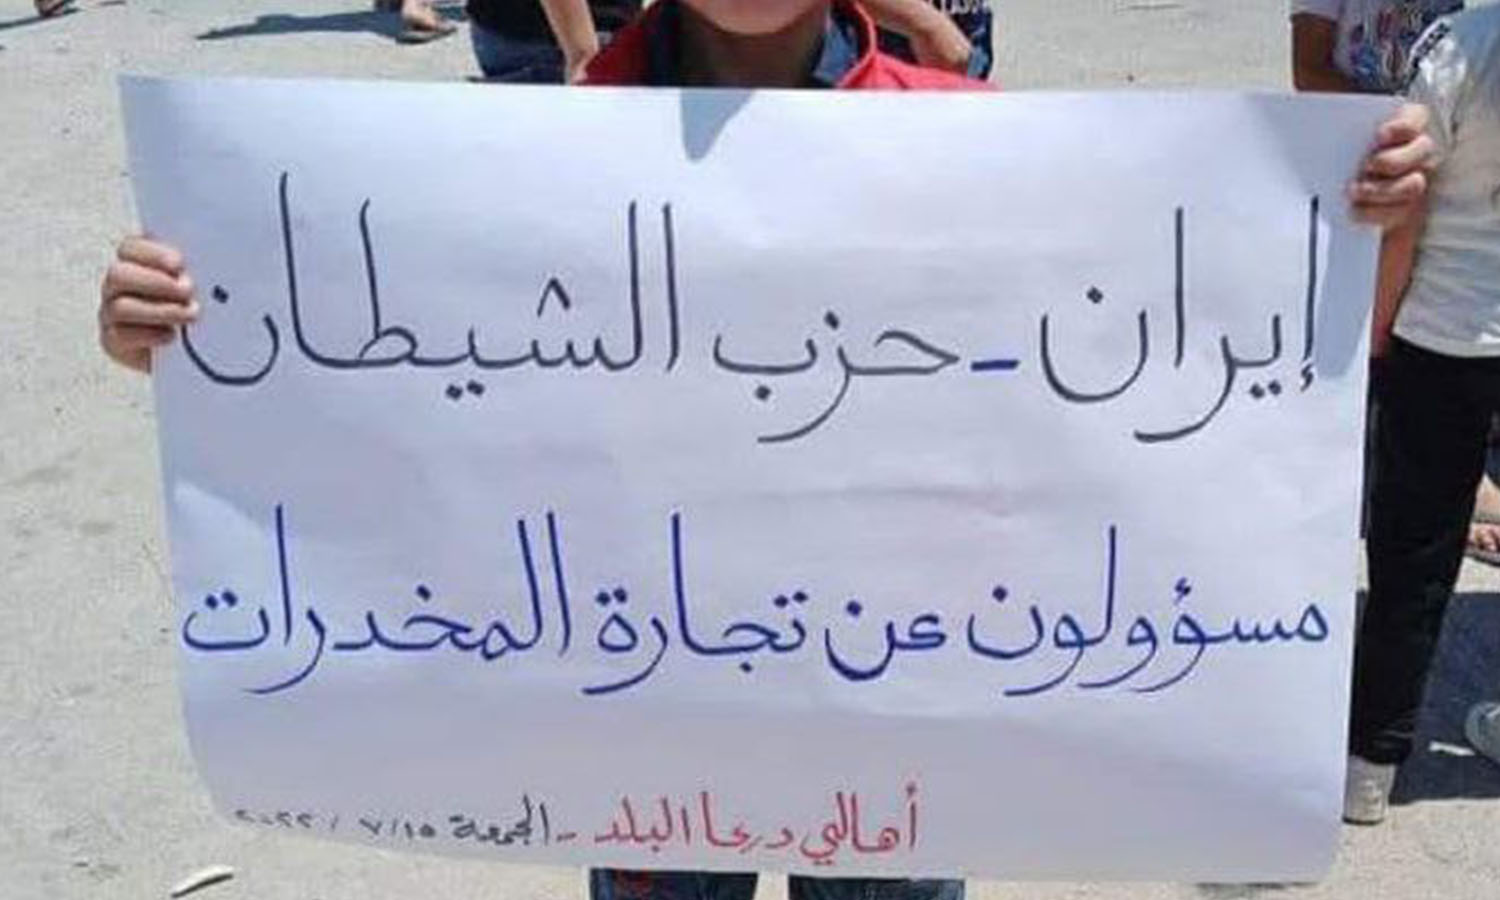 إحدى اللافتات التي رفعت في مظاهرة درعا البلد-15 من تموز 2022 (تجمع أحرار حوران)